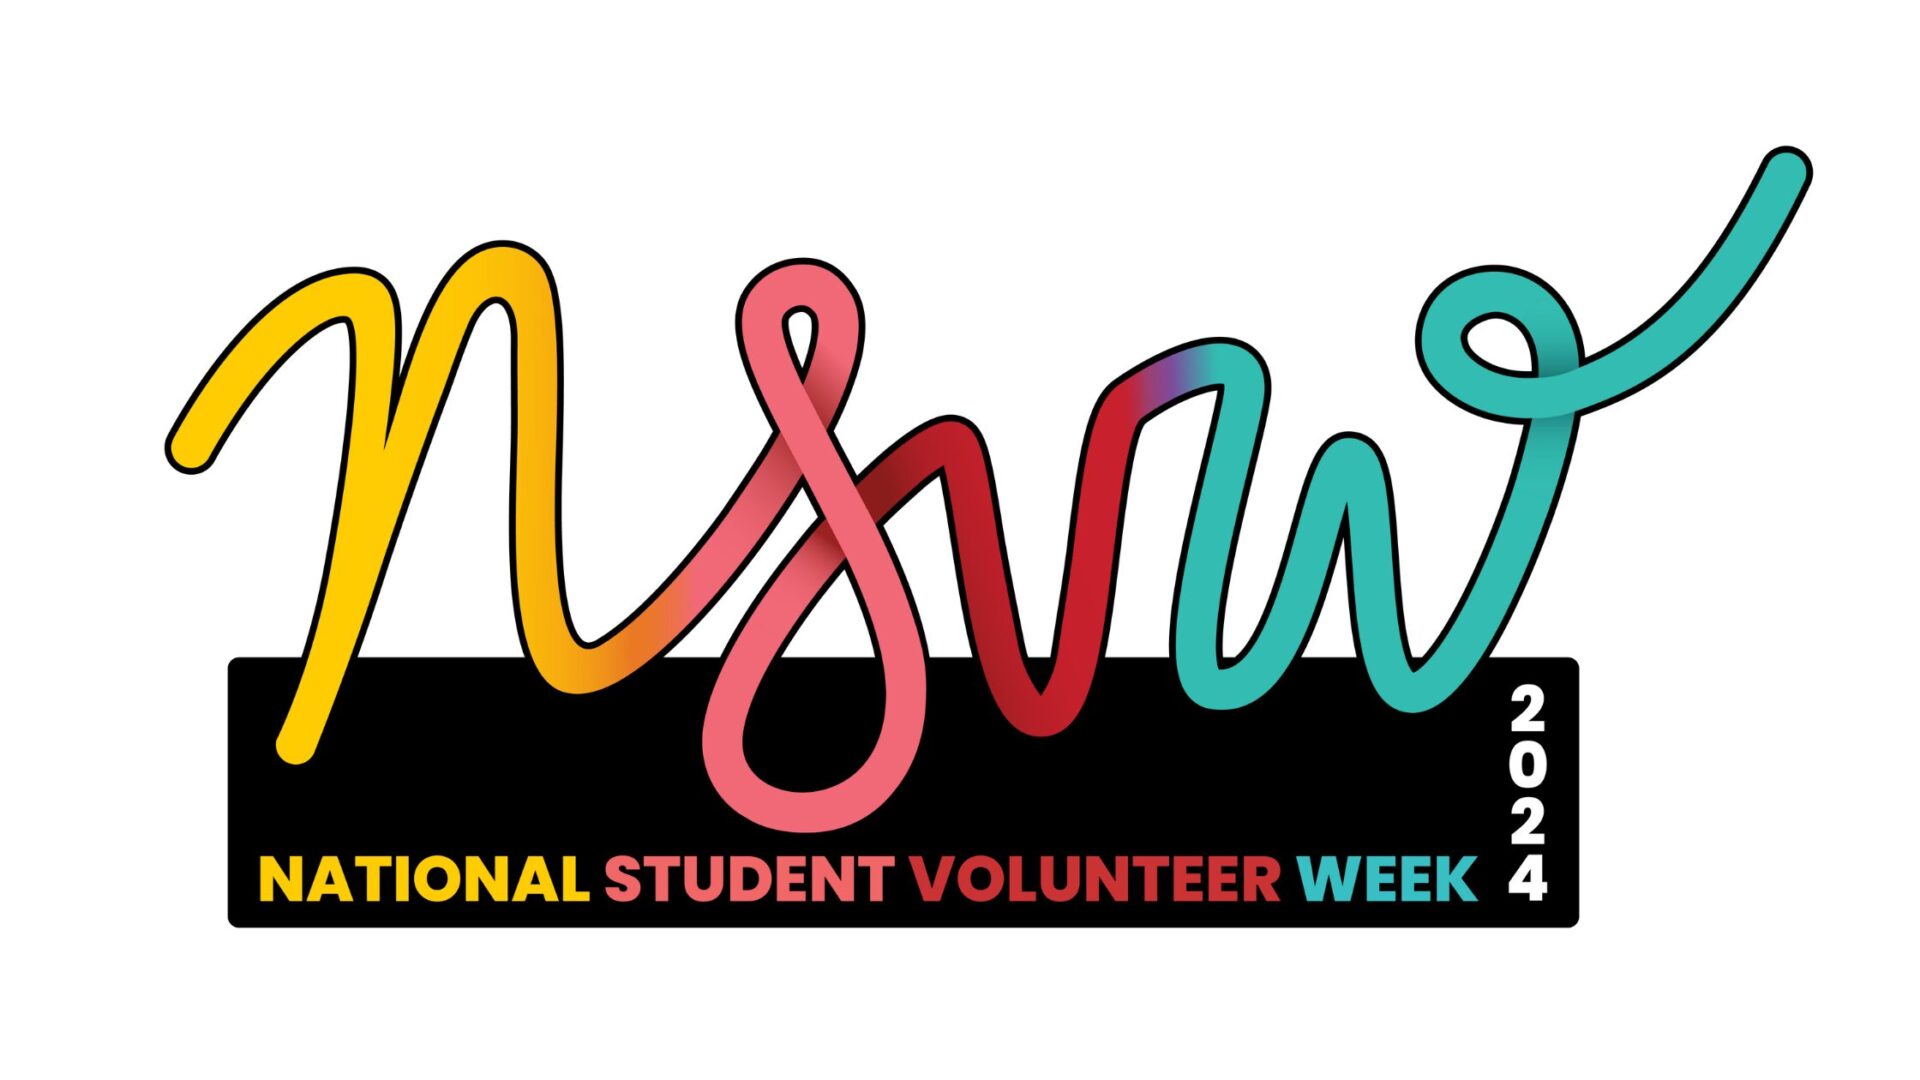 National Student Volunteer Week